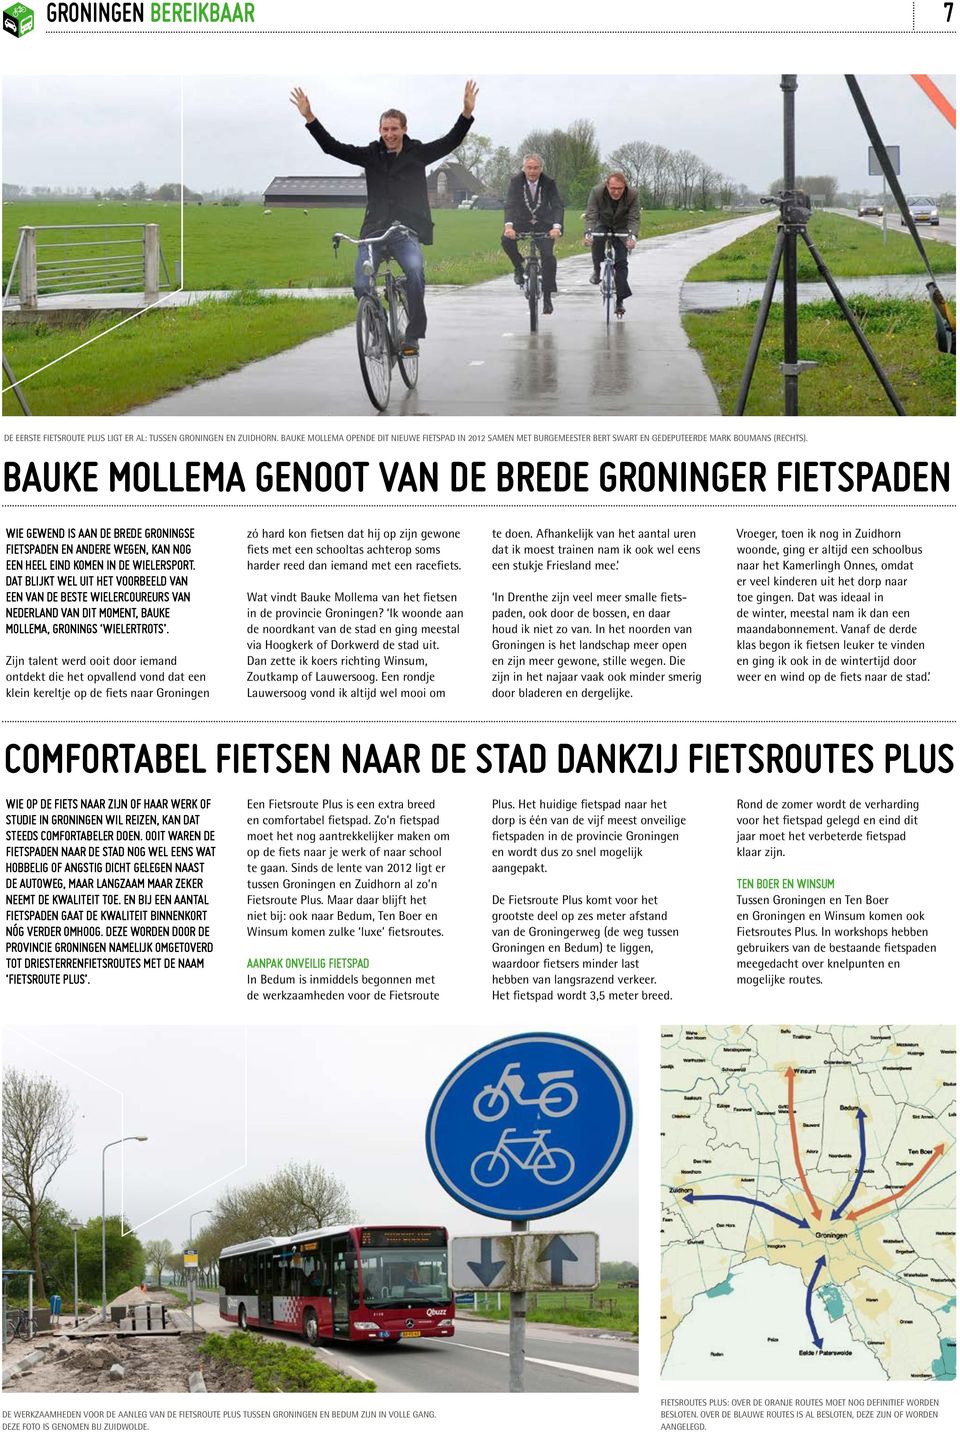 Bauke Mollema genoot van de brede Groninger fietspaden Wie gewend is aan de brede Groningse fietspaden en andere wegen, kan nog een heel eind komen in de wielersport.